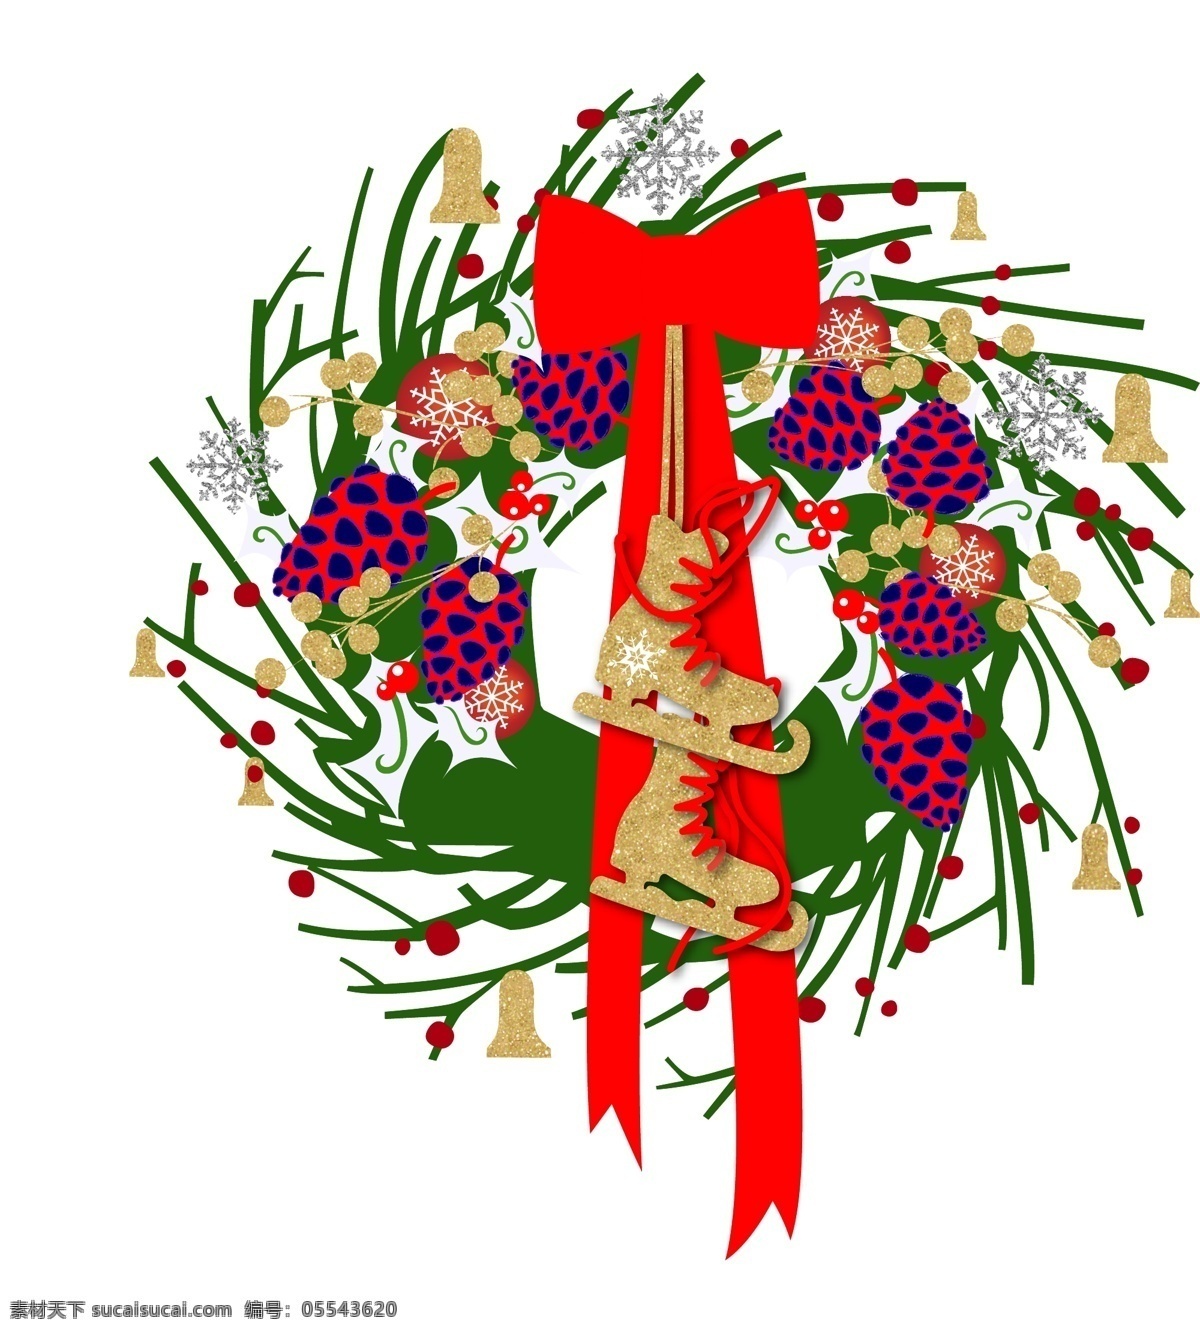 圣诞节 装饰 溜冰 靴 松果 蝴蝶结 花环 元素 图案 铃铛 装饰图案 溜冰靴 圣诞装饰球 元素图案